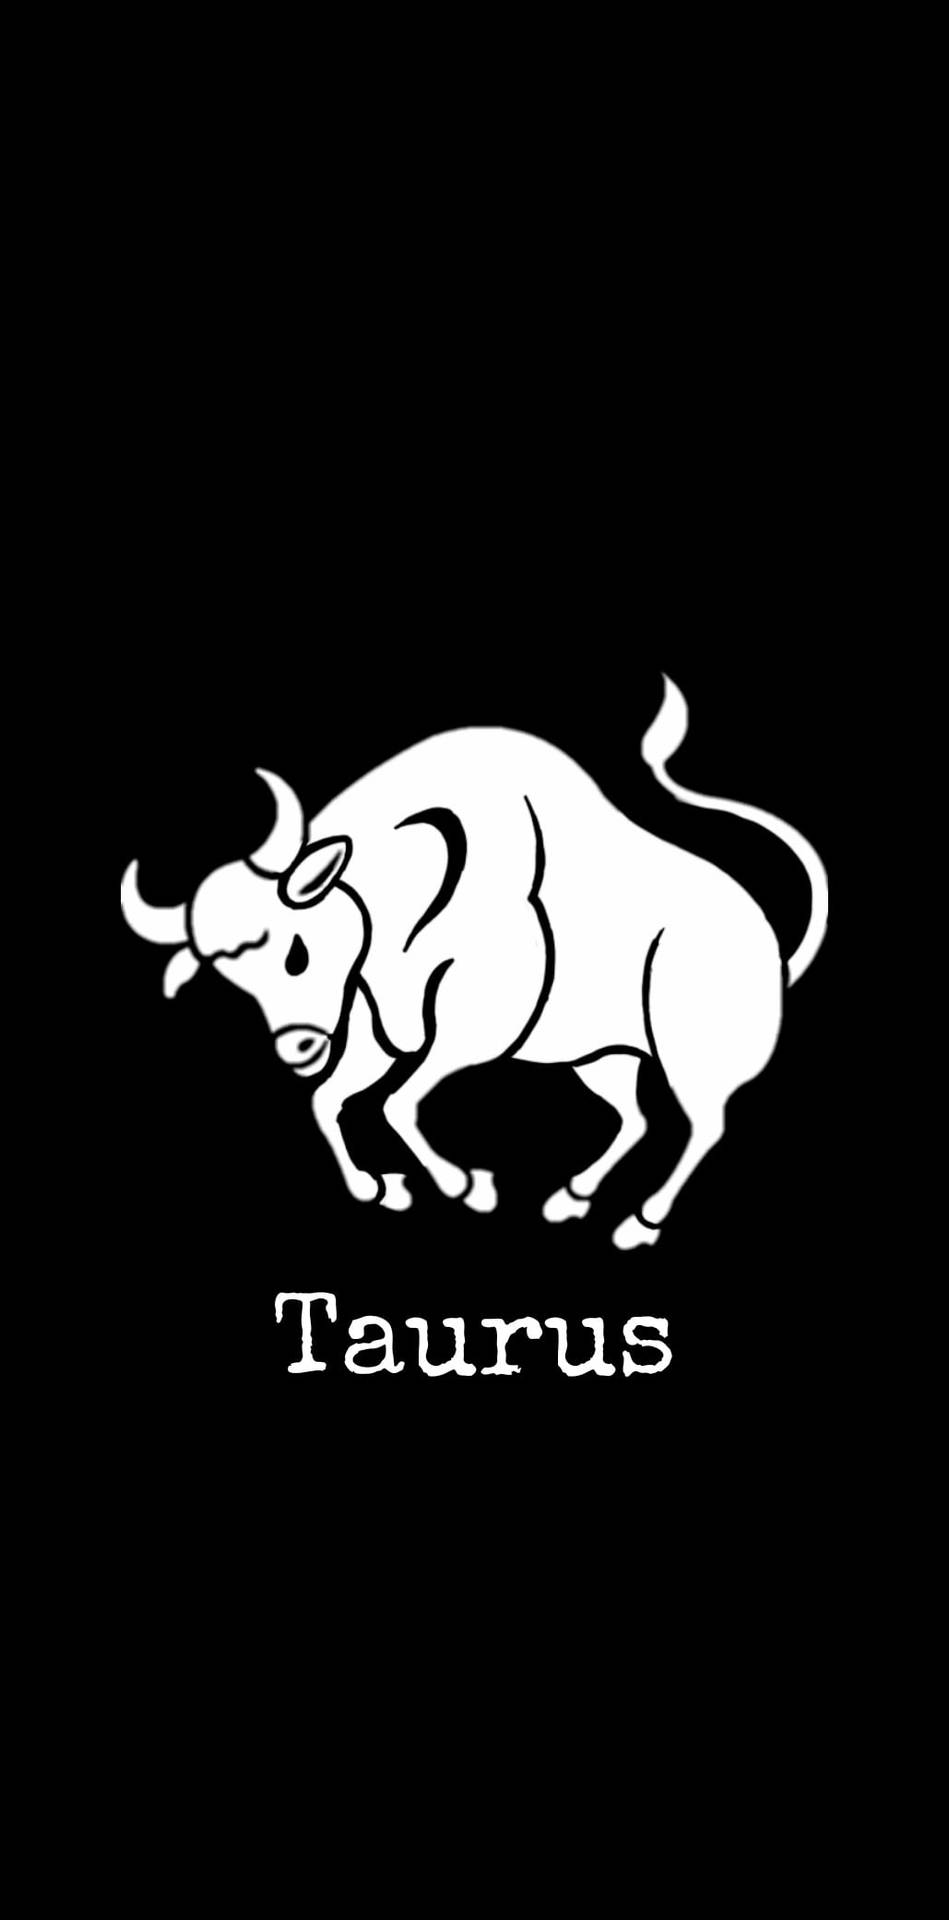 Taurus Billeder